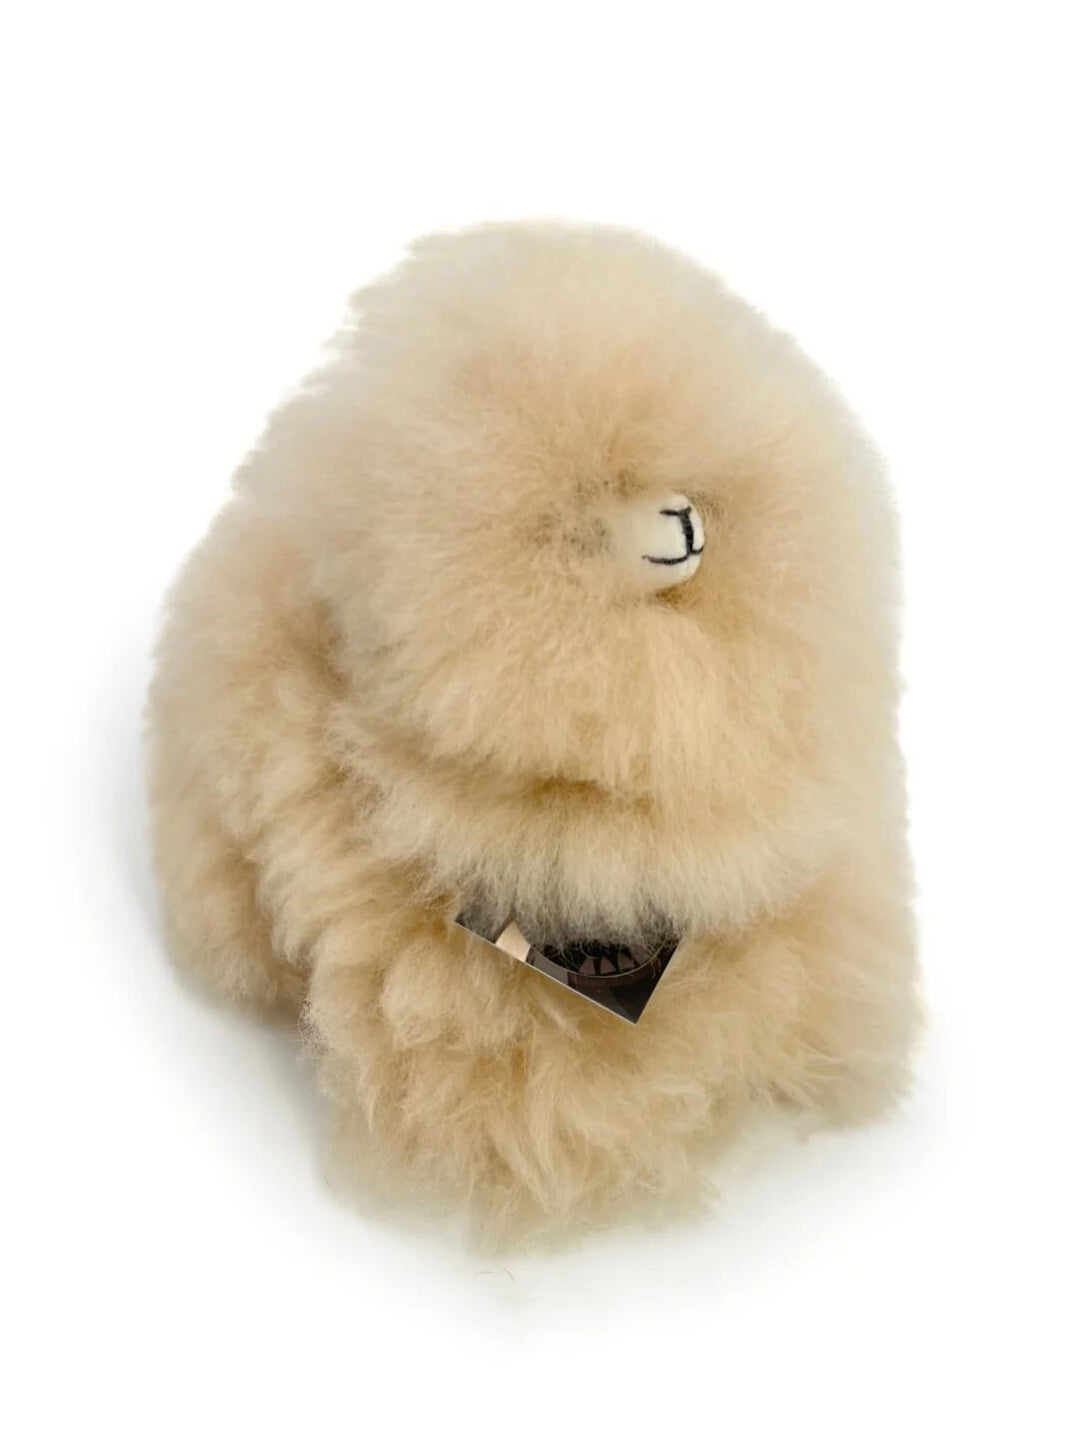 Inkari Alpaca soft toy-Monsterfluff- BLOND-Mini 15cm